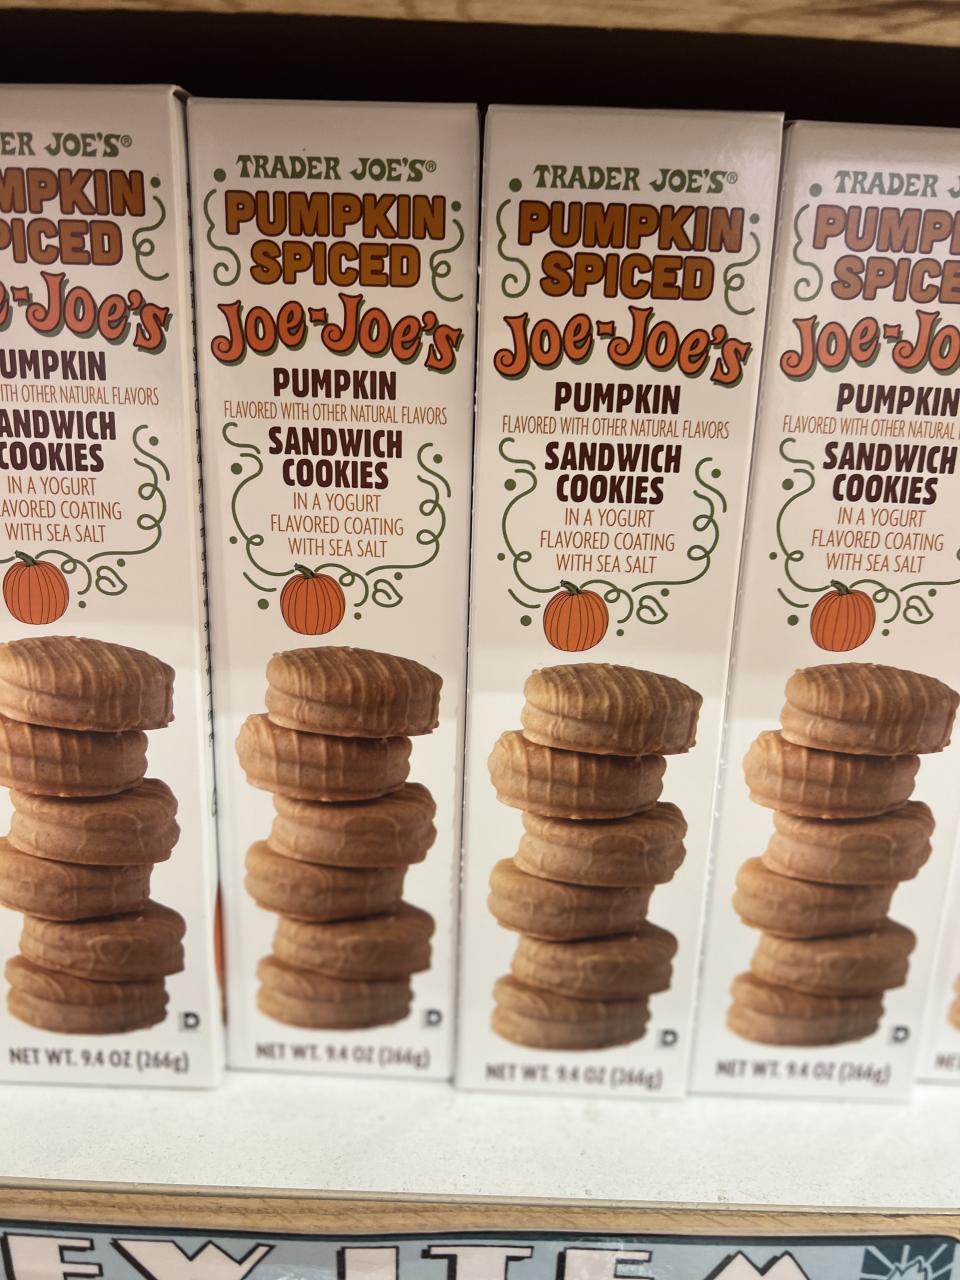 Pumpkin Spiced Joe-Joe's Sandwich Cookies